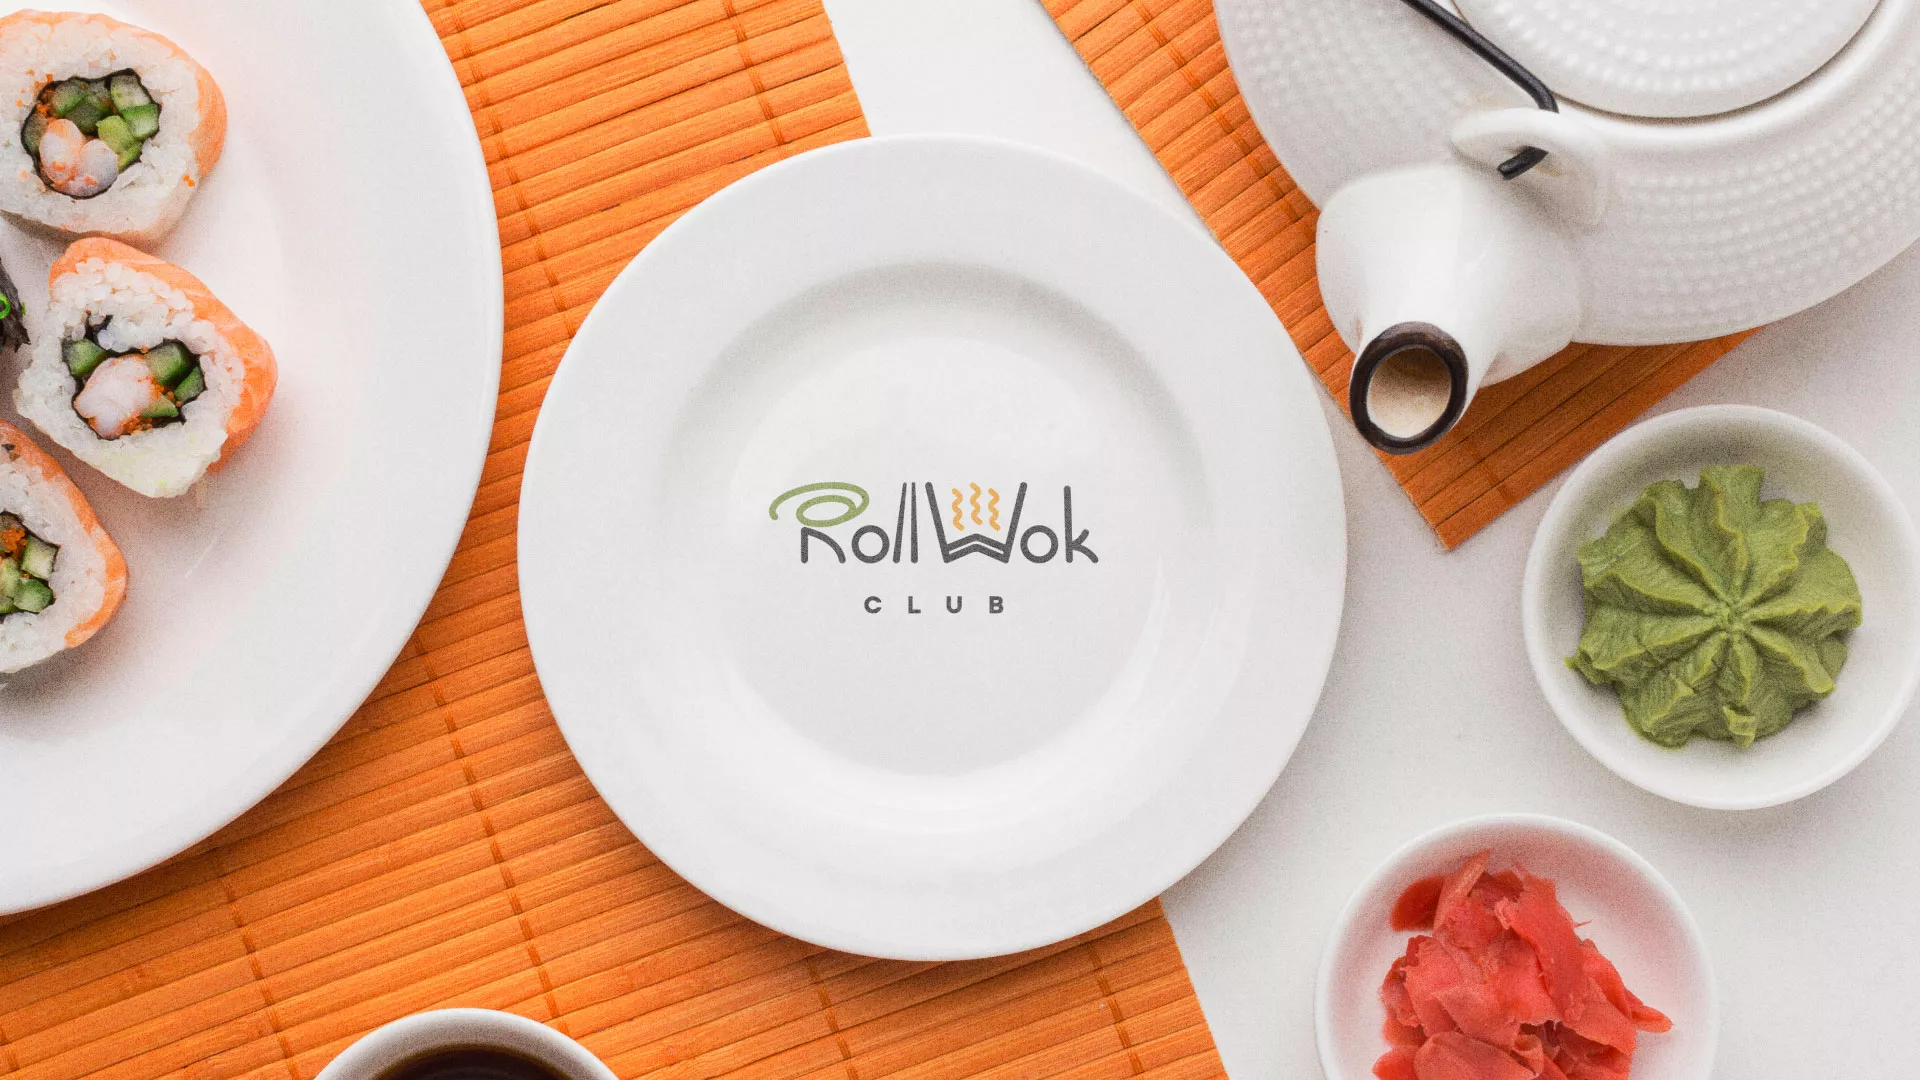 Разработка логотипа и фирменного стиля суши-бара «Roll Wok Club» в Радужном